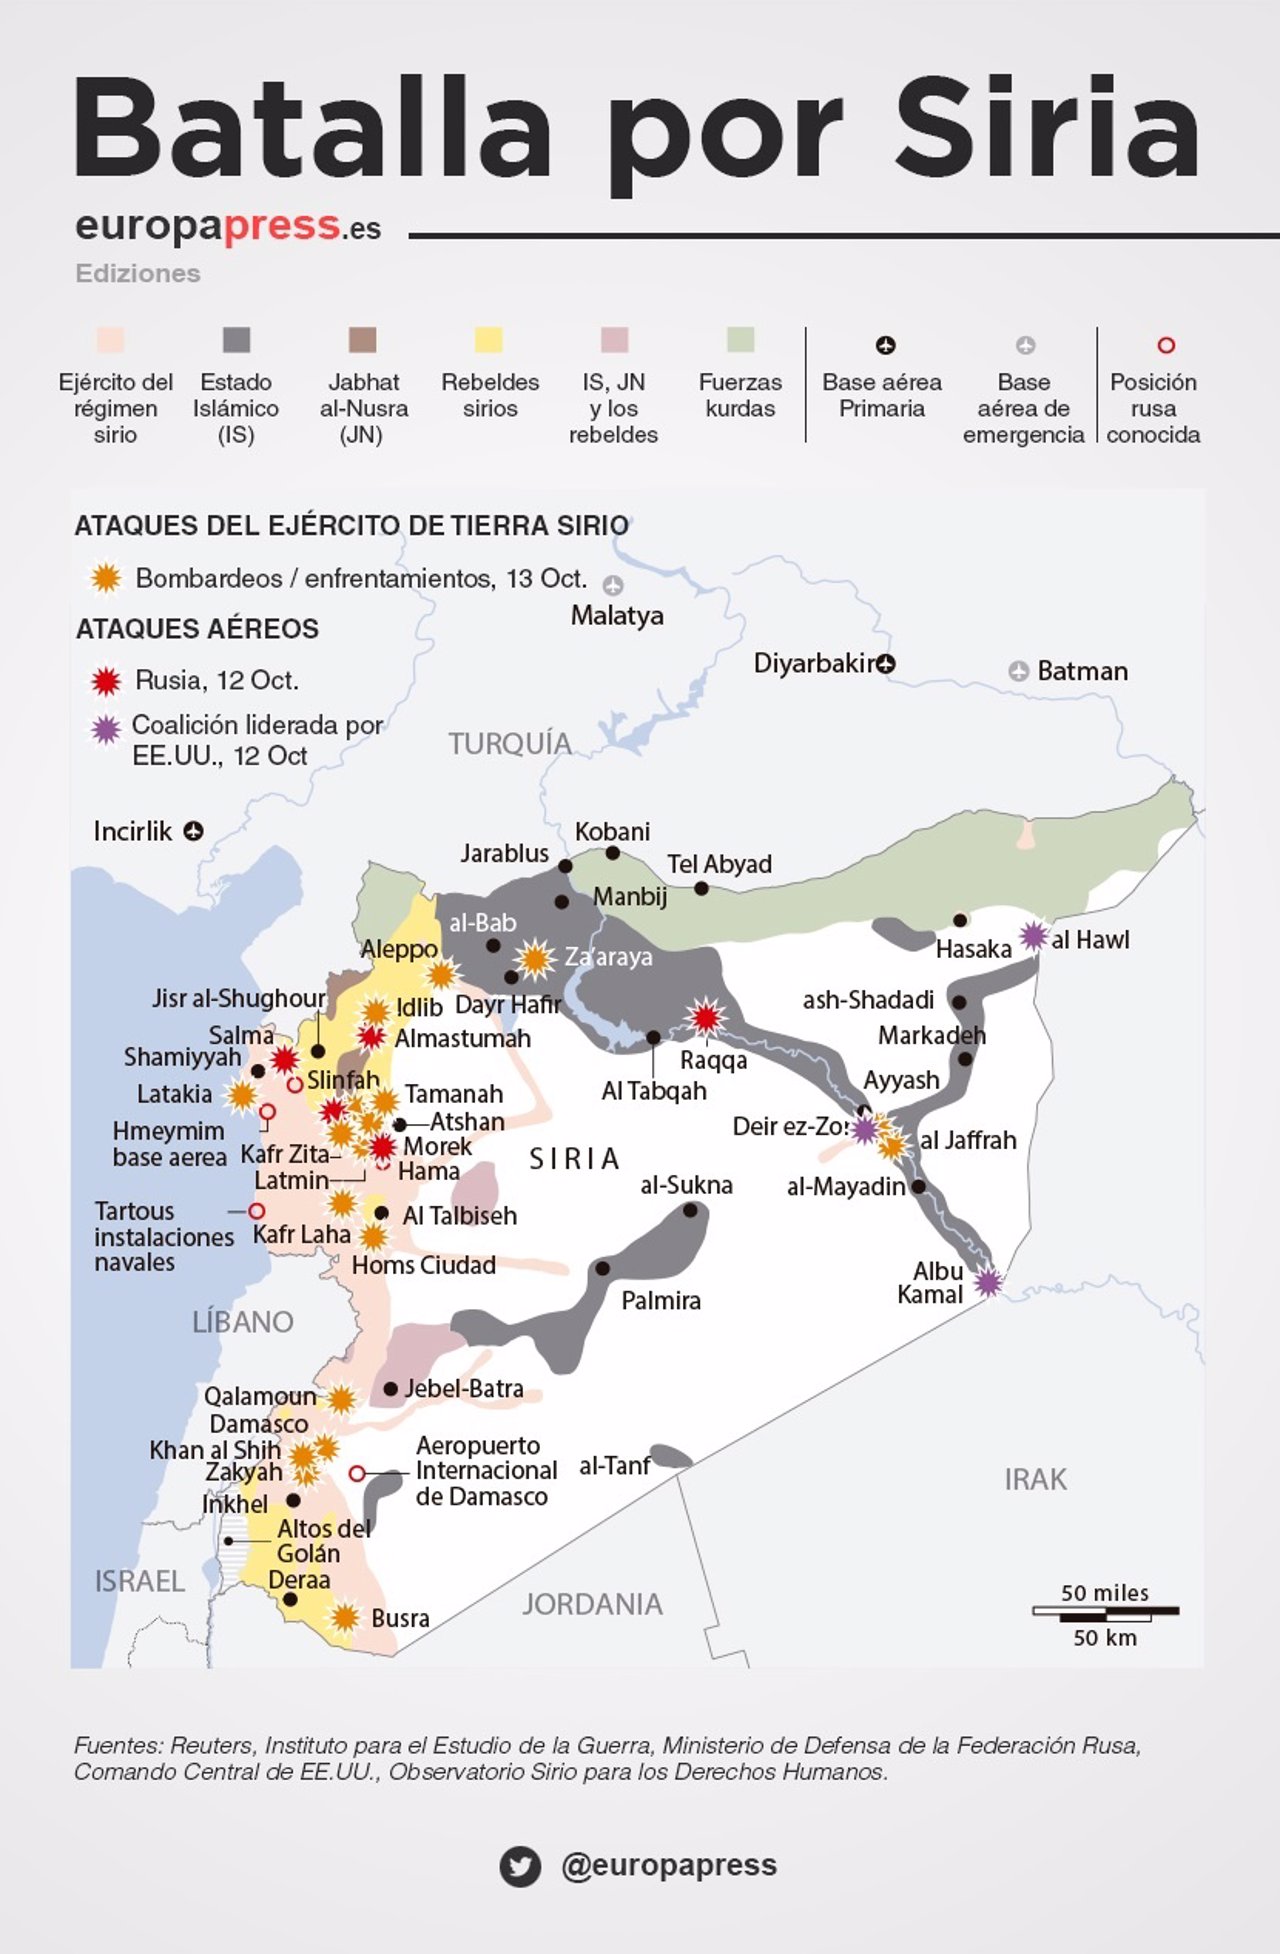 Batalla por Siria. Mapa de actores y bombardeos